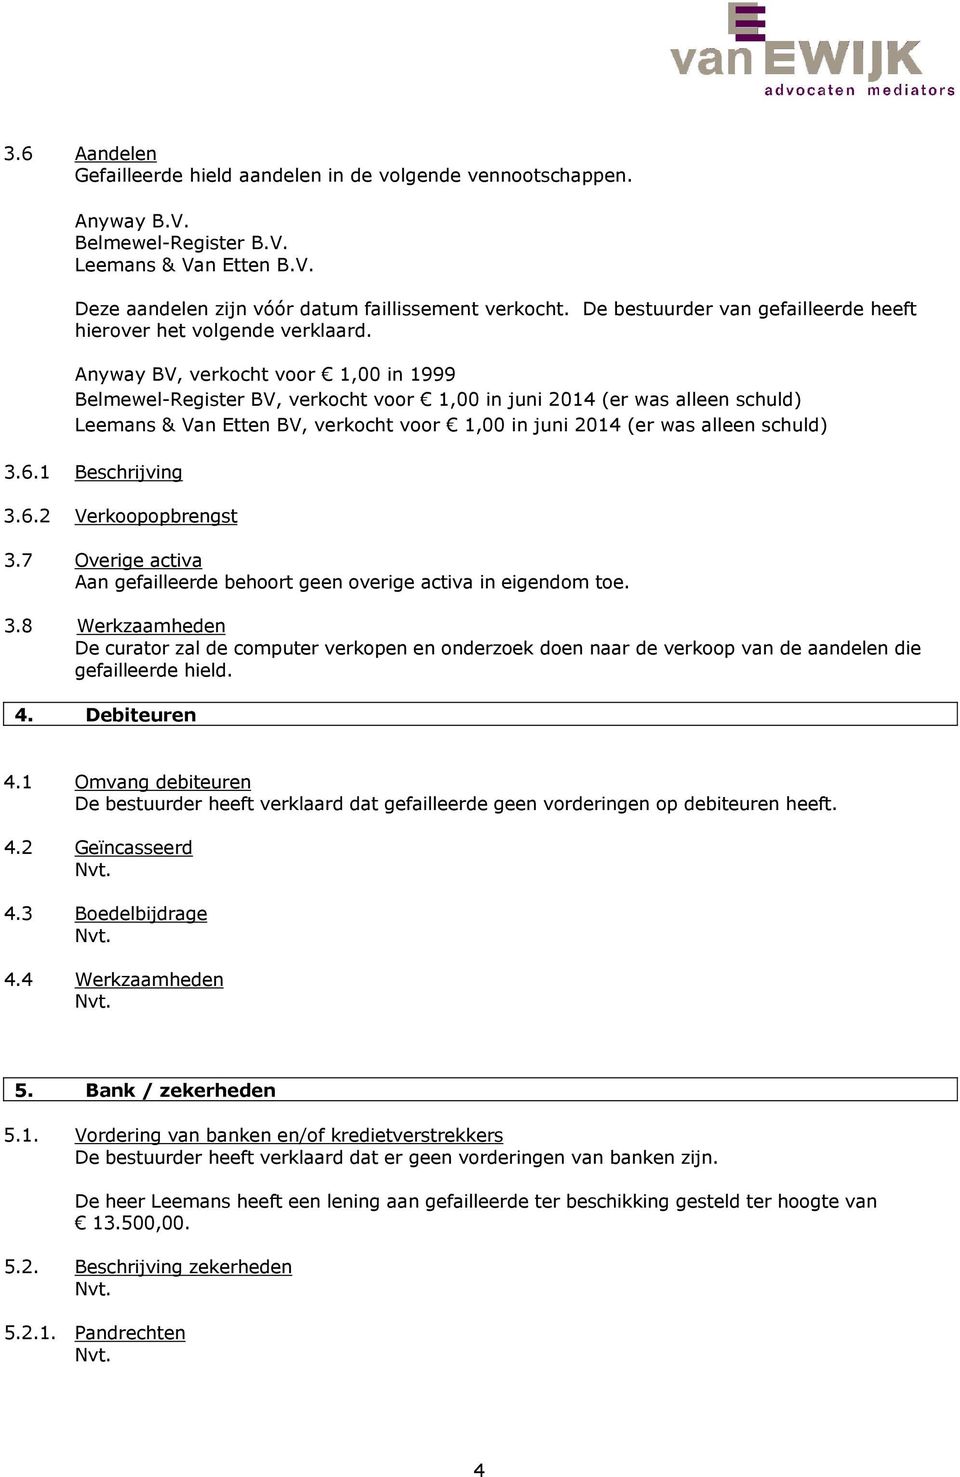 Anyway BV, verkocht voor 1,00 in 1999 Belmewel-Register BV, verkocht voor 1,00 in juni 2014 (er was alleen schuld) Leemans & Van Etten BV, verkocht voor 1,00 in juni 2014 (er was alleen schuld) 3.6.